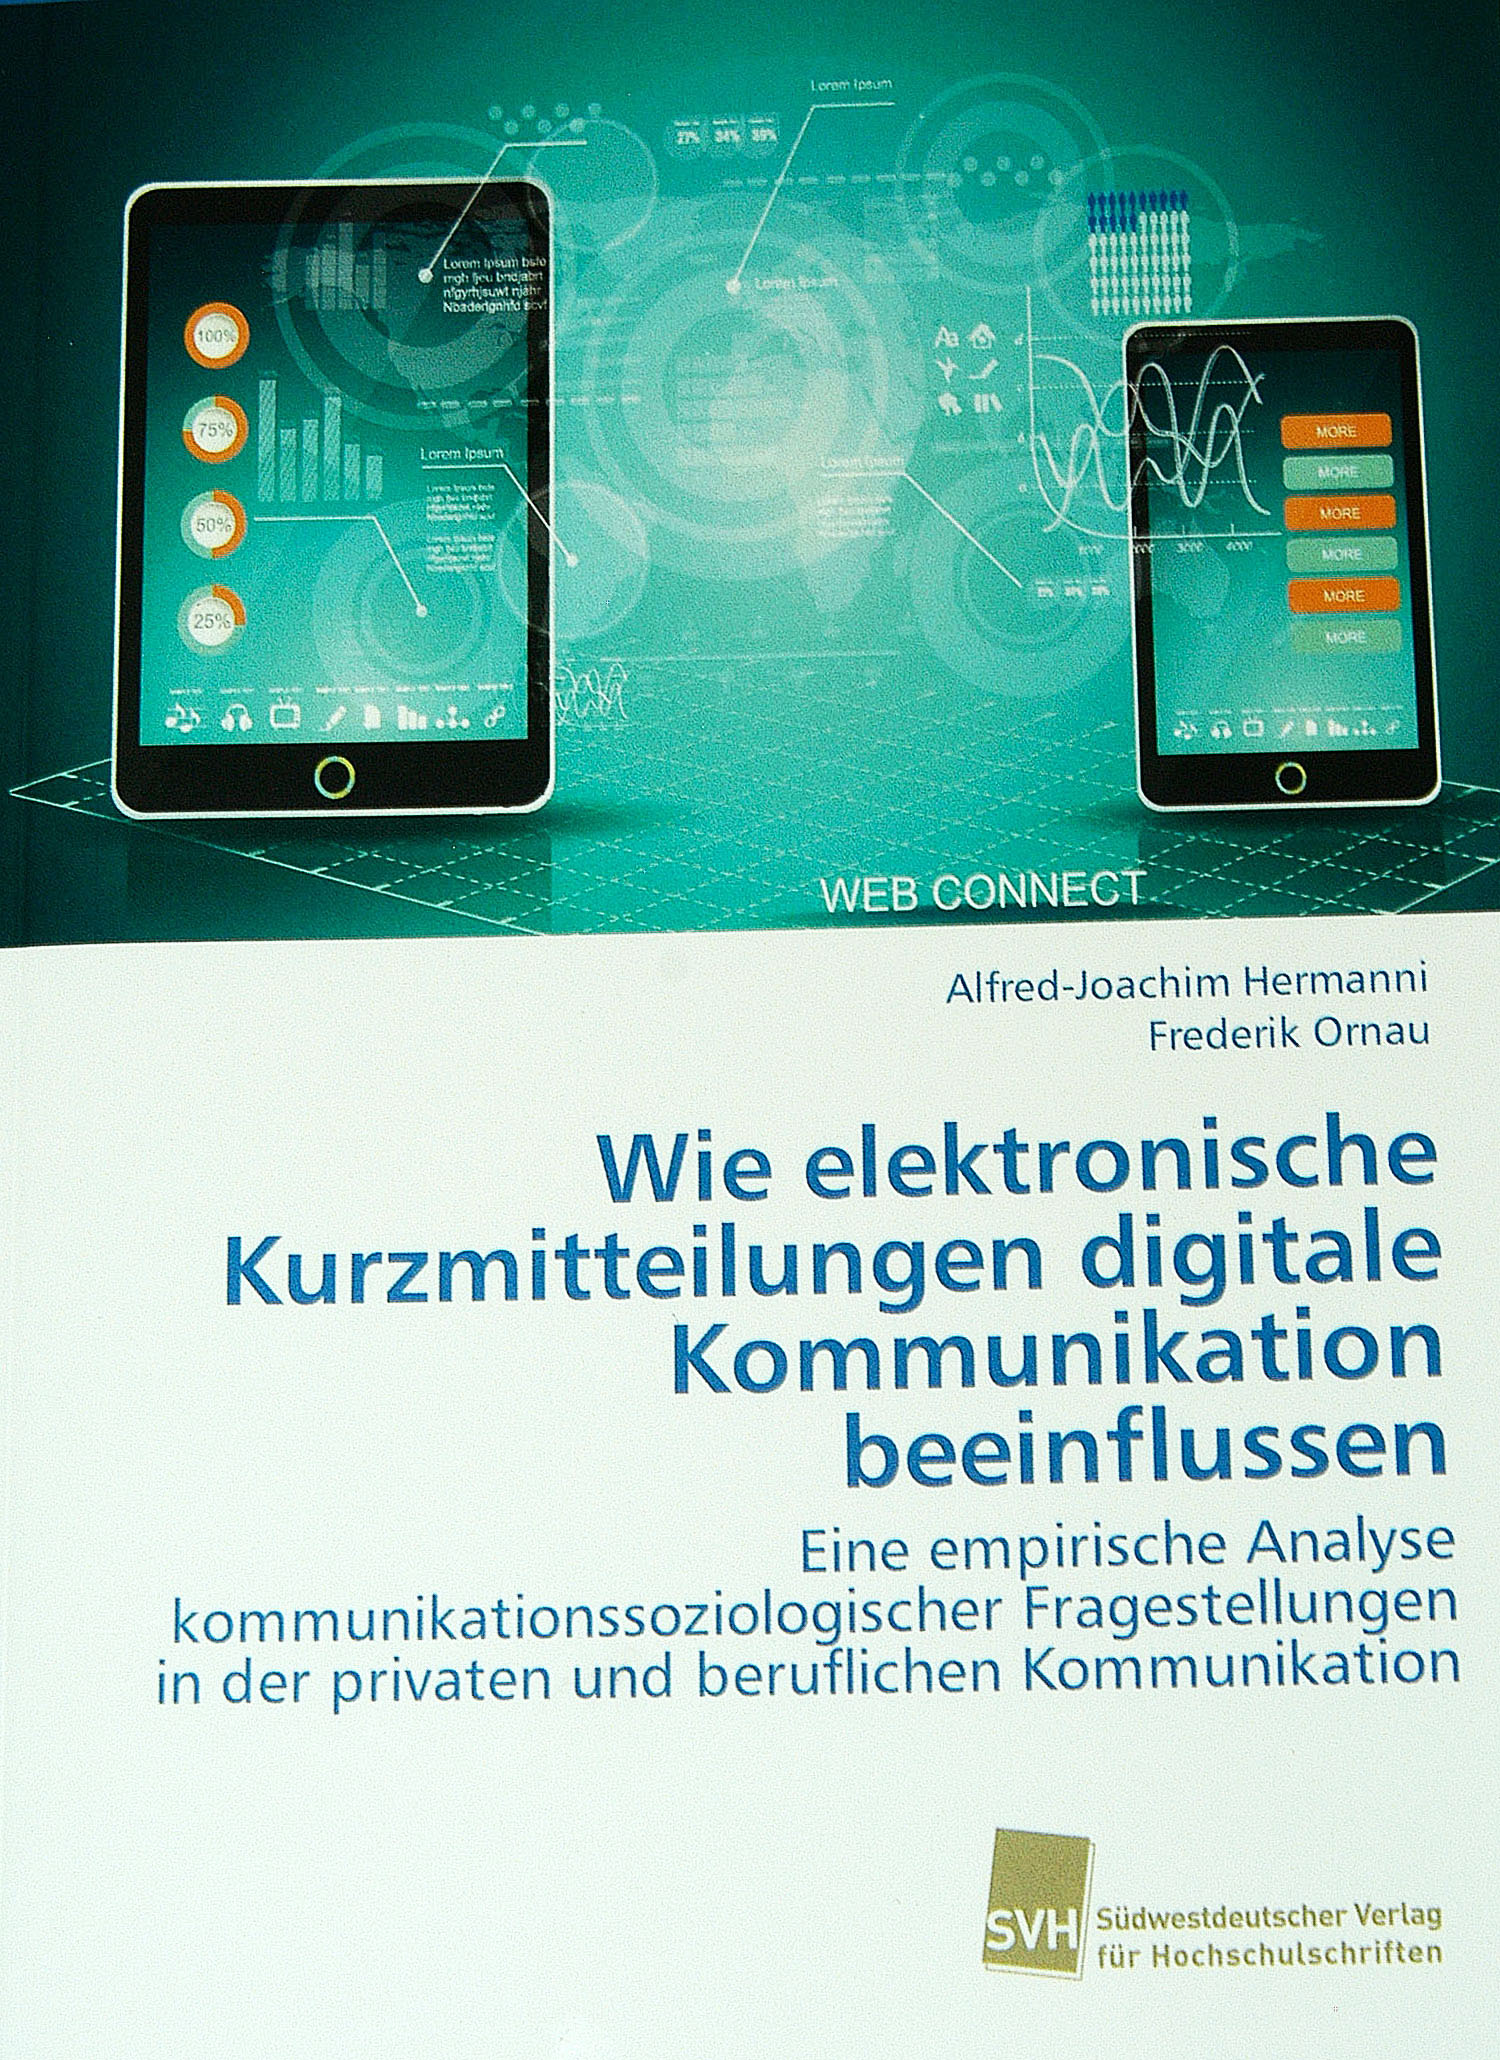 Buchtitel "Wie elektronische Kurzmitteilungen digitale Kommunikation beeinflussen" von Professor Dr. Alfred-Joachim Hermanni und Professor Dr. Frederik Ornau